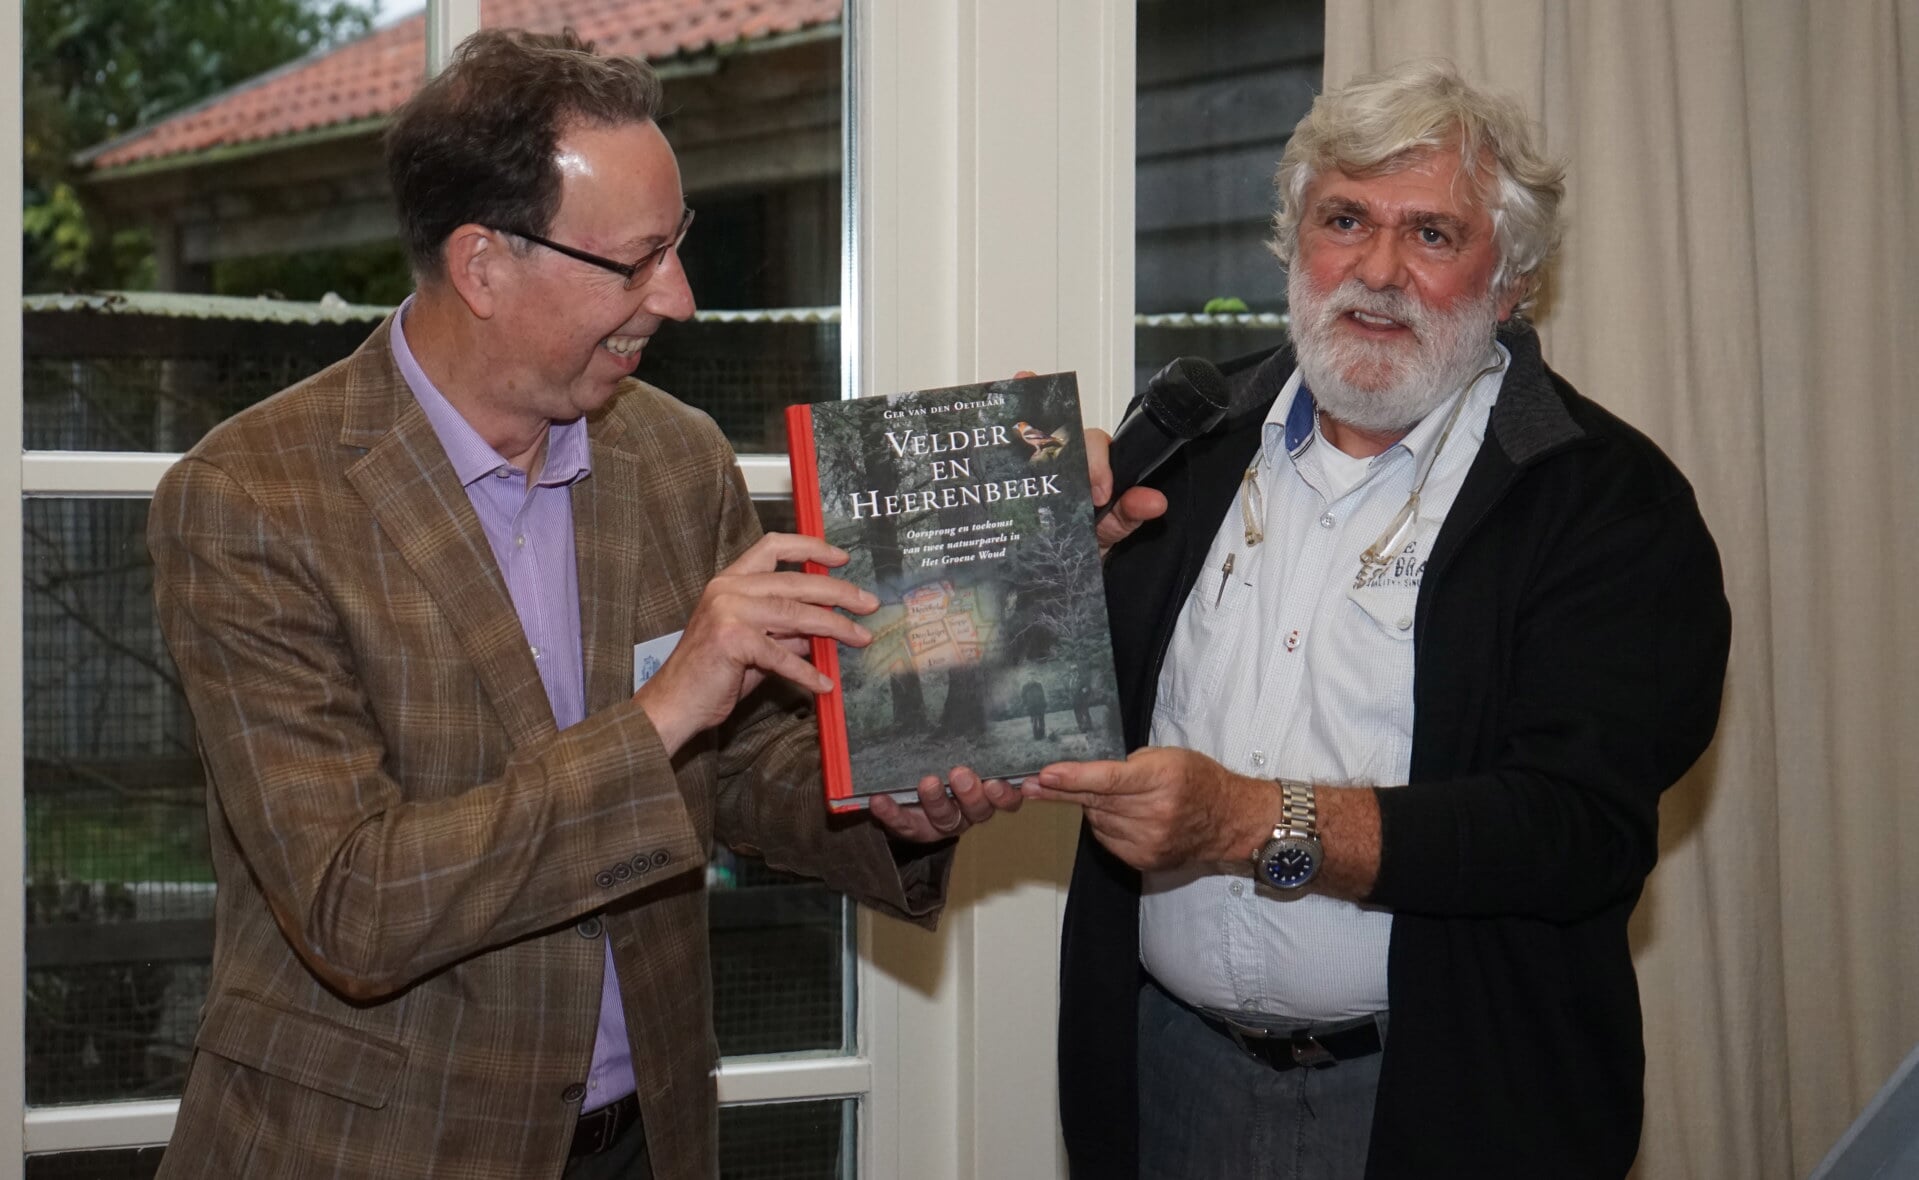 De voorzitters Arnold van den Broek (Kèk Liemt, links) en Ad de Kort (Natuurwerkgroep Liempde) presenteren het eerste exemplaar van het boek over Velder en Heerenbeek. Beide organisaties namen het initiatief voor de lijvige publicatie. (Foto: Albert Stolwijk).